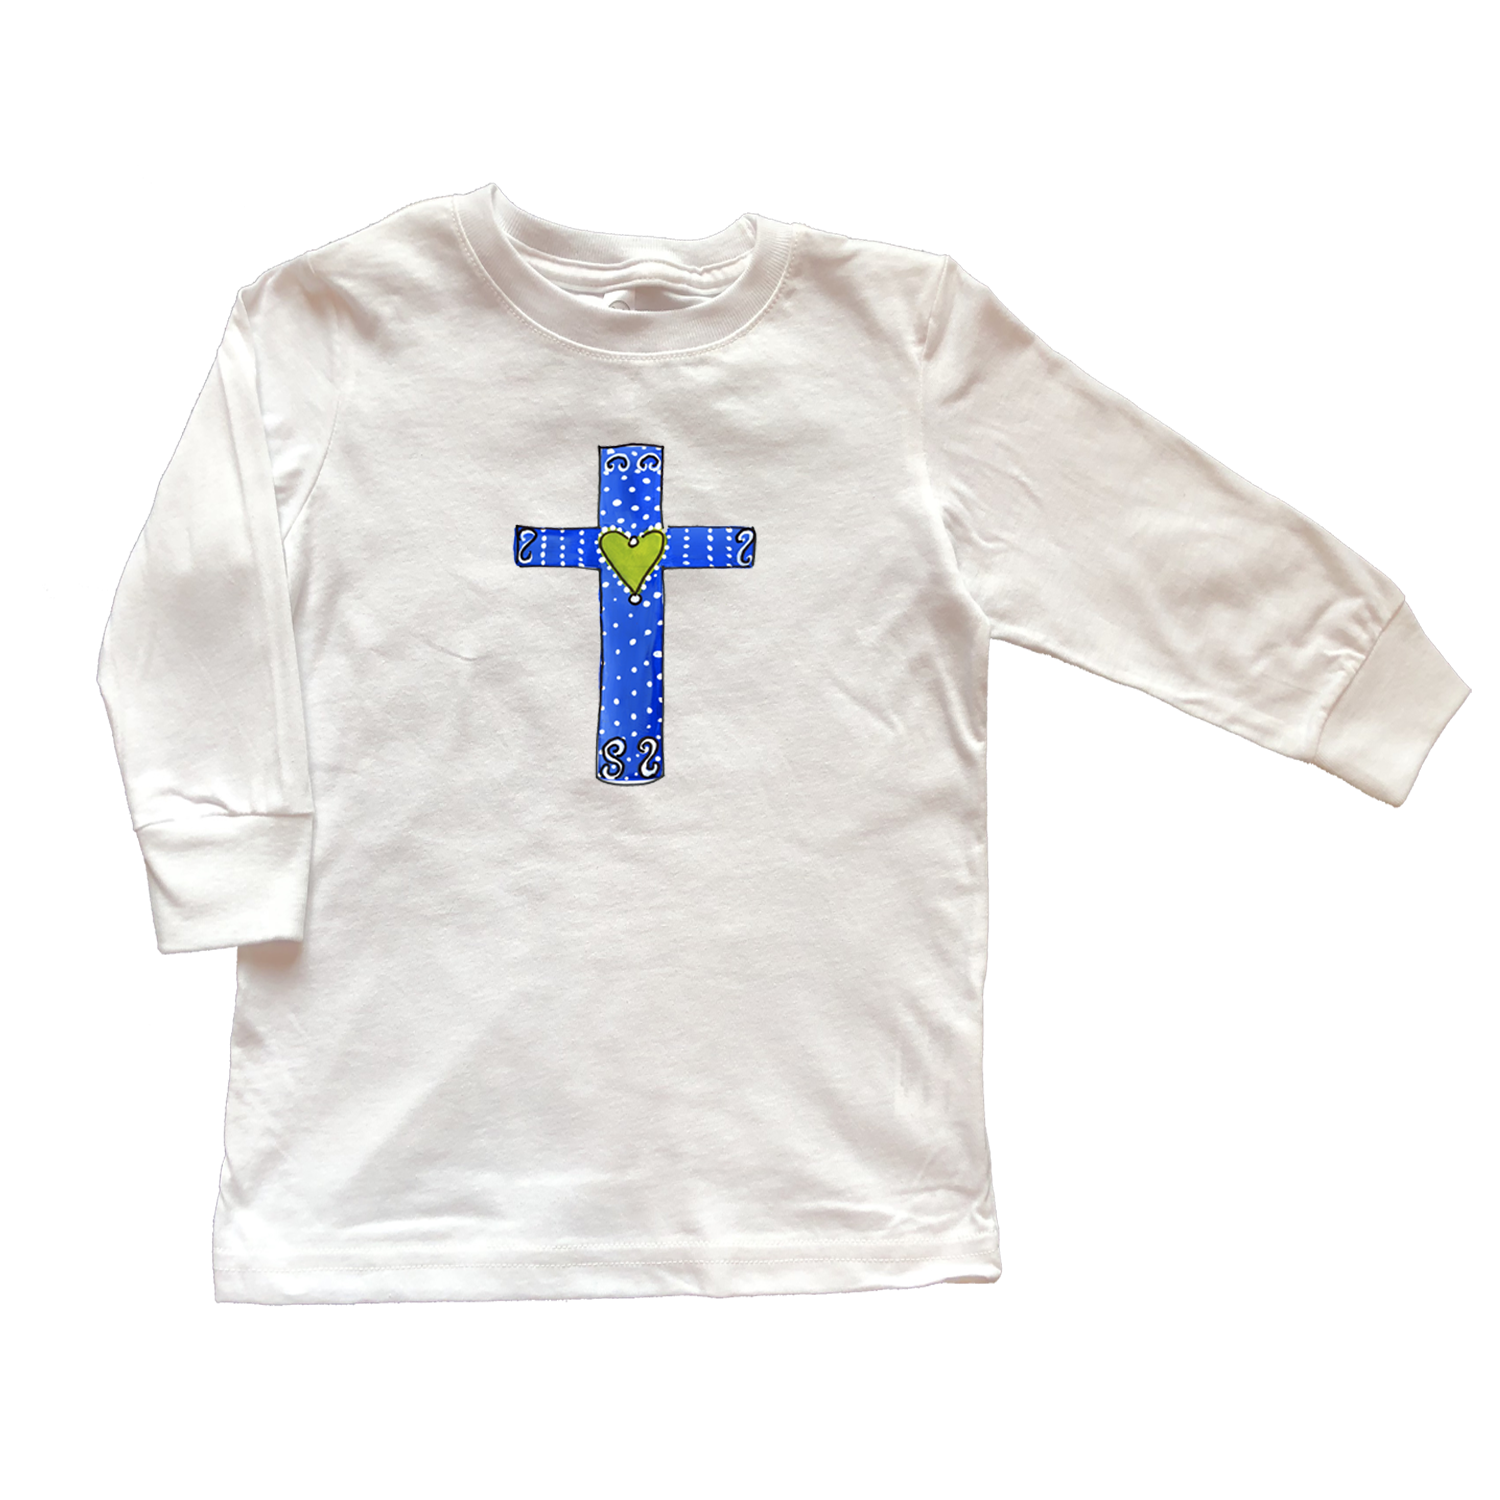 Cotton Tee Shirt Long Sleeve 1053 Blue Cross